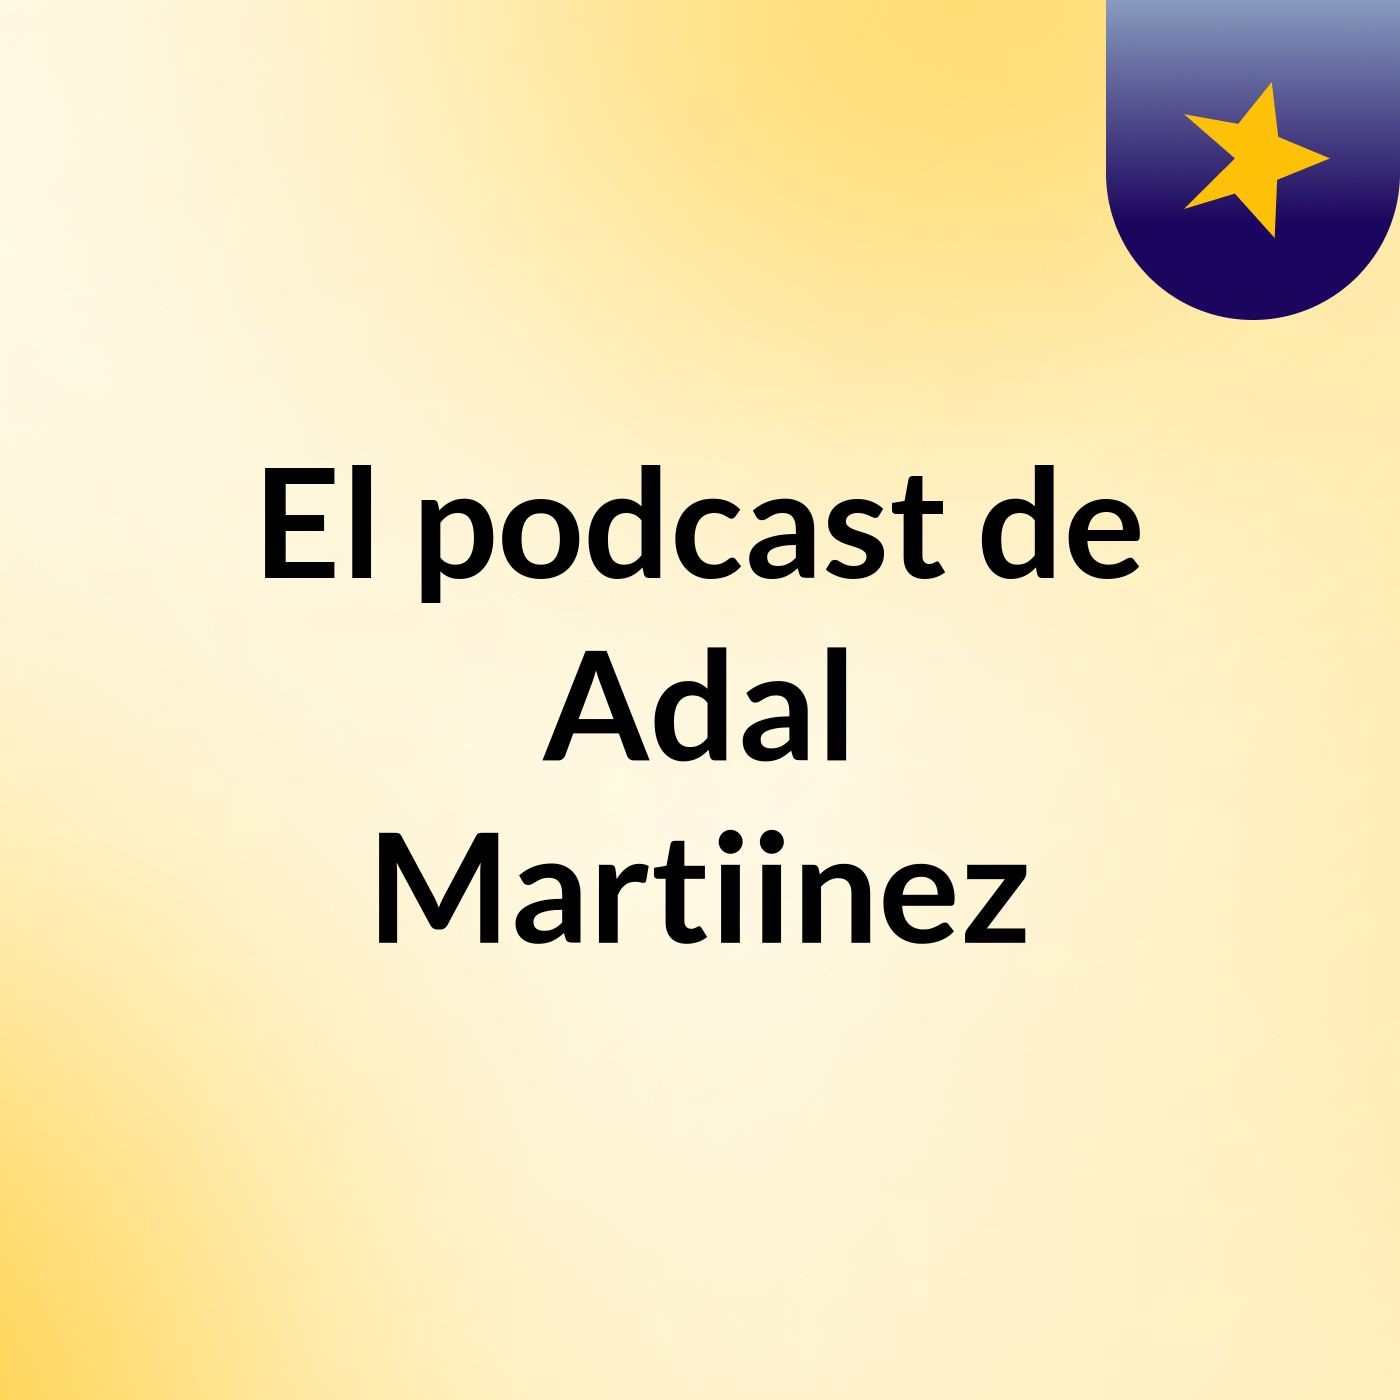 El podcast de Adal Martiinez